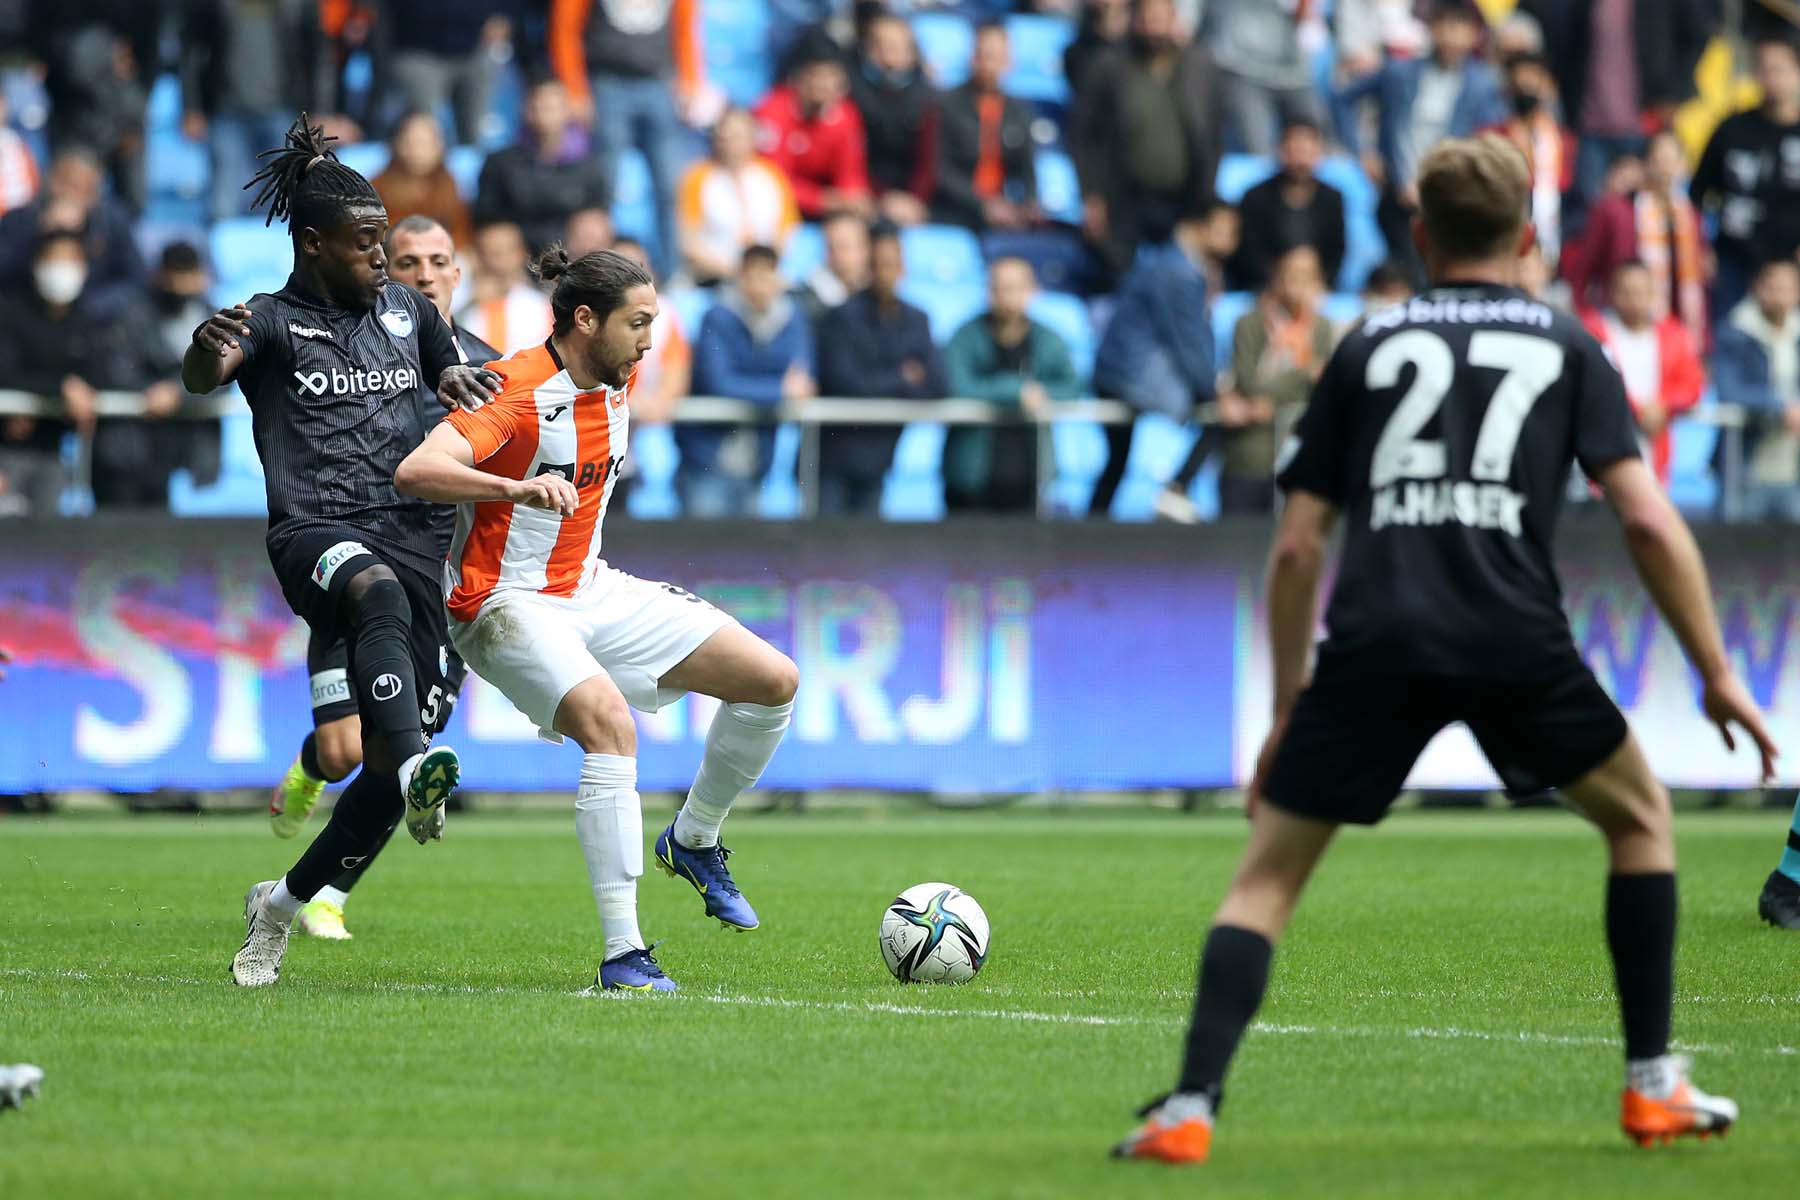 Adanaspor 1 –1 BB Erzurumspor | Maç sonucu, özeti 